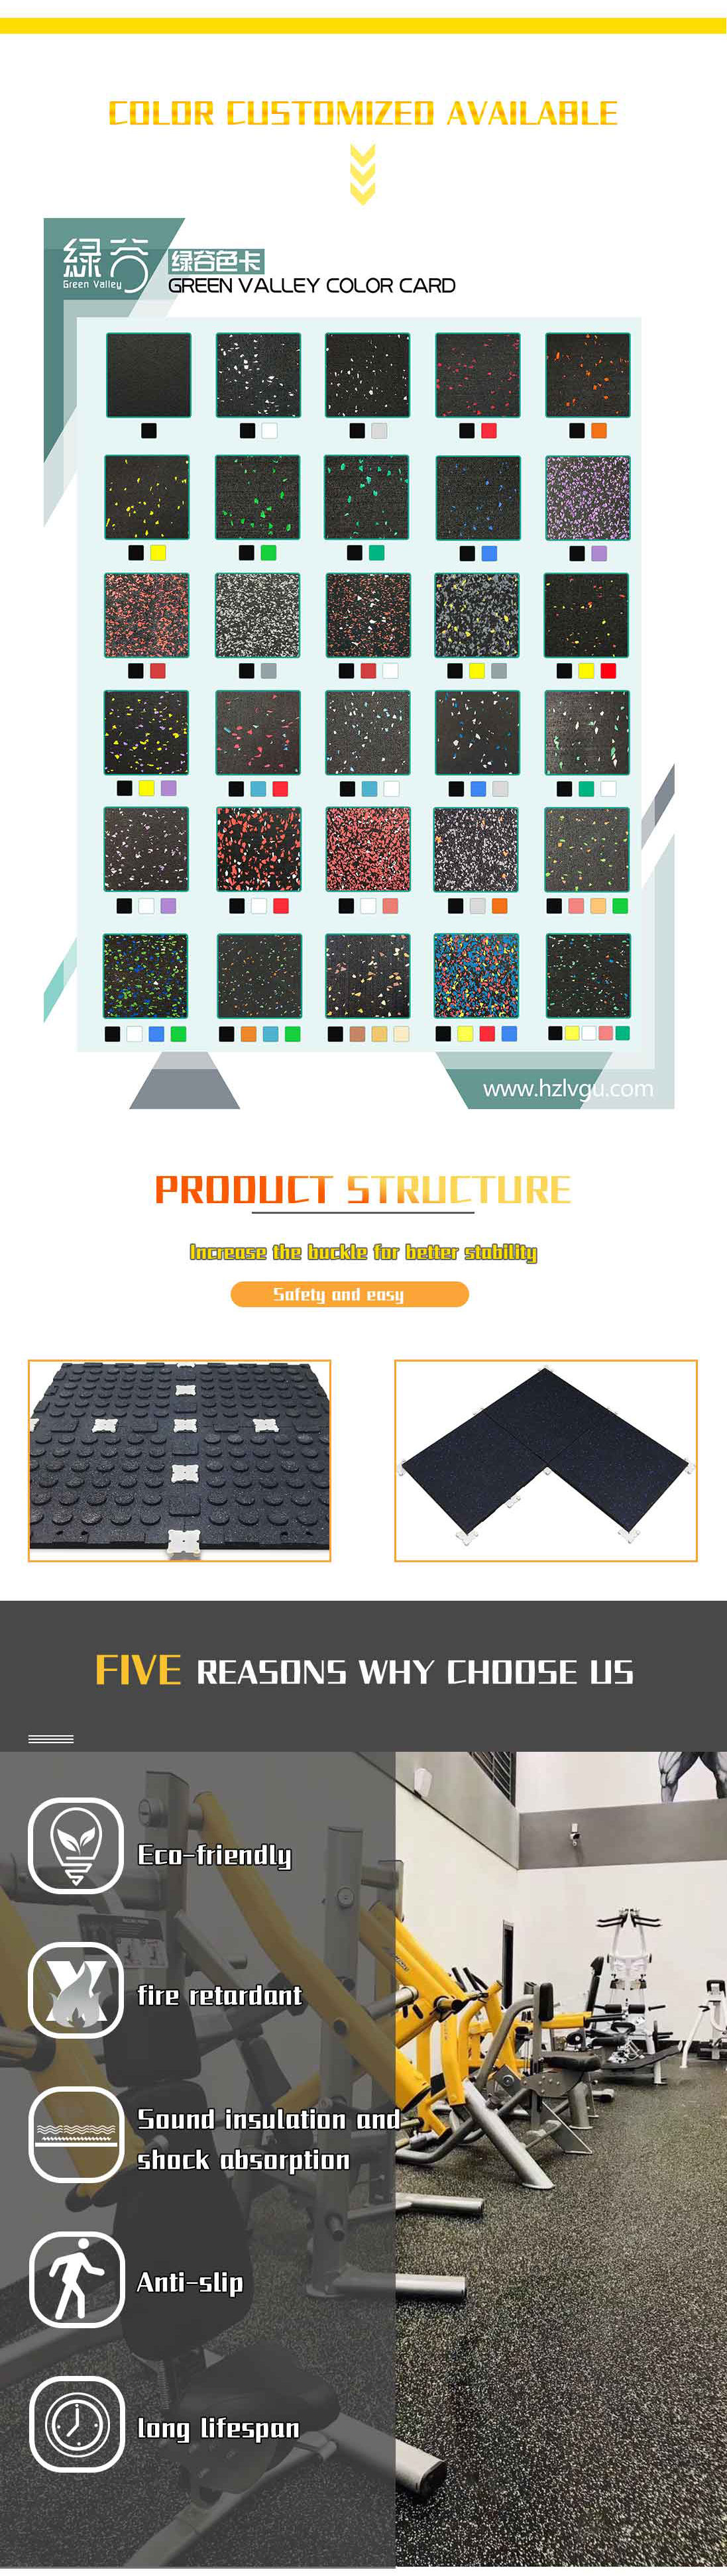 Цветной резиновый коврик EPDM